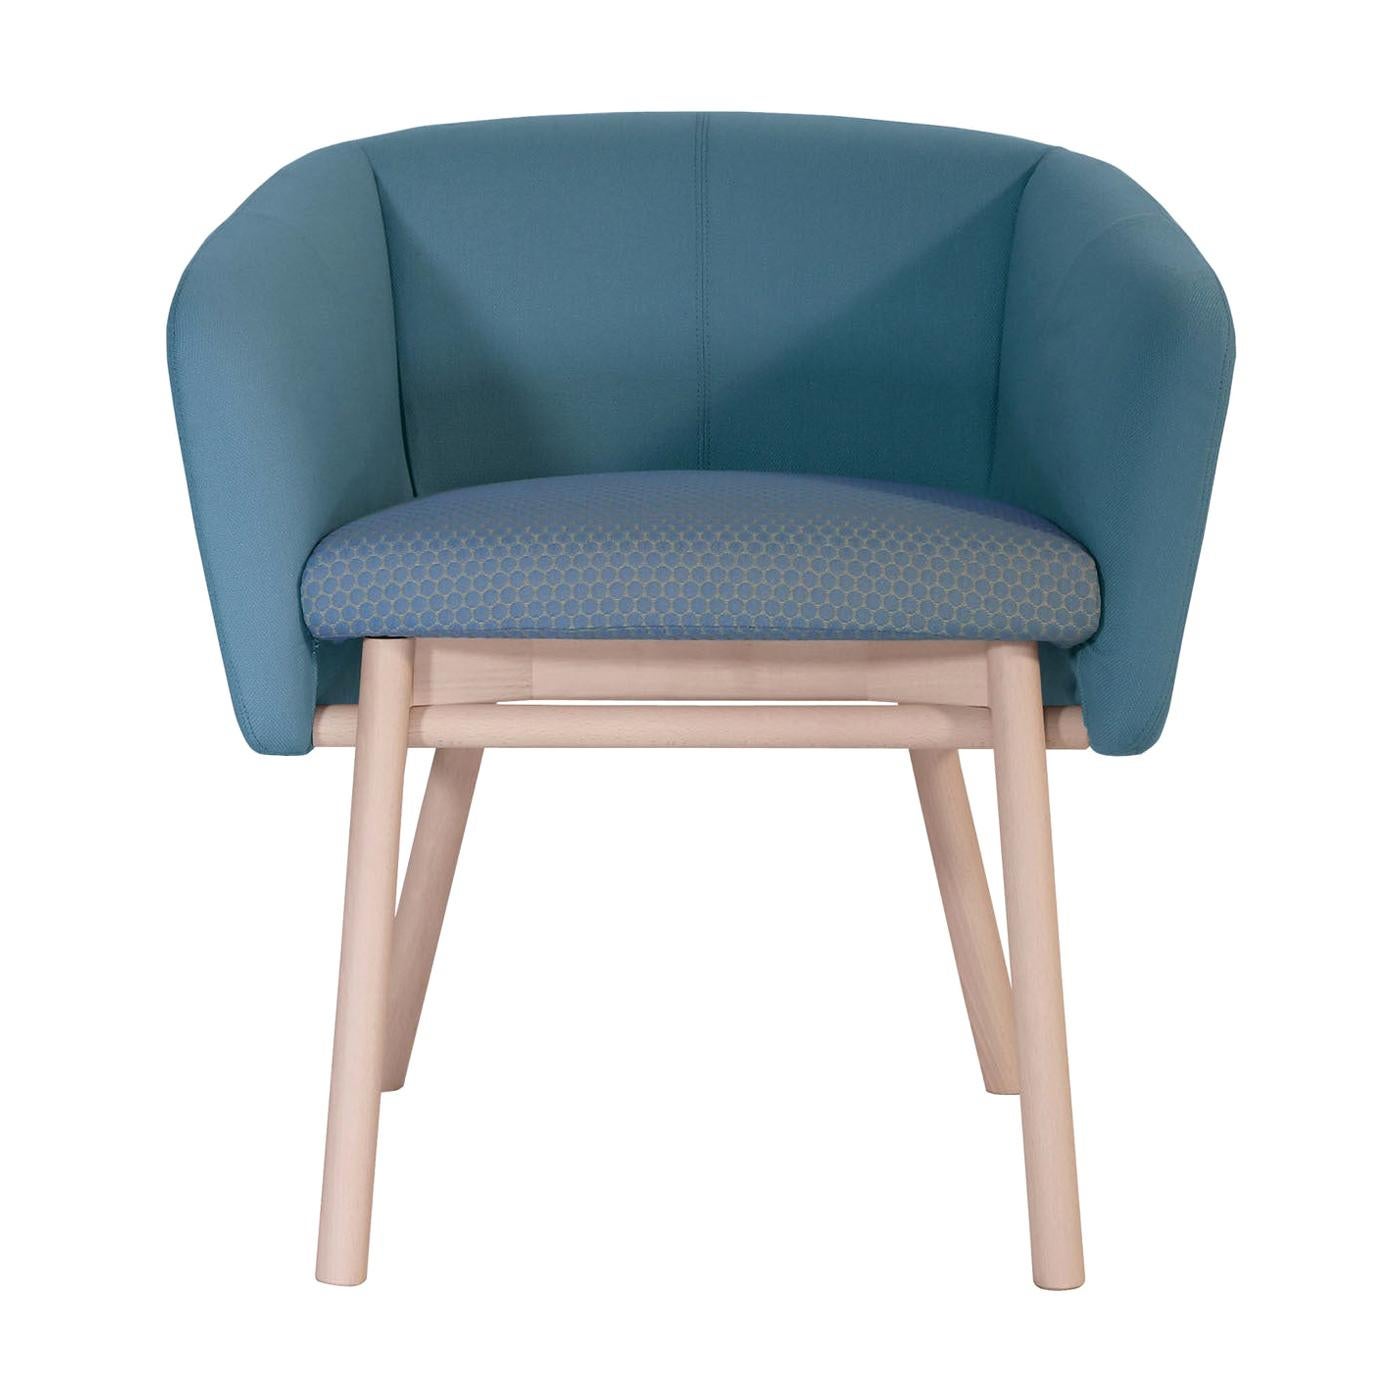 Balù Blue Chair by Emilio Nanni